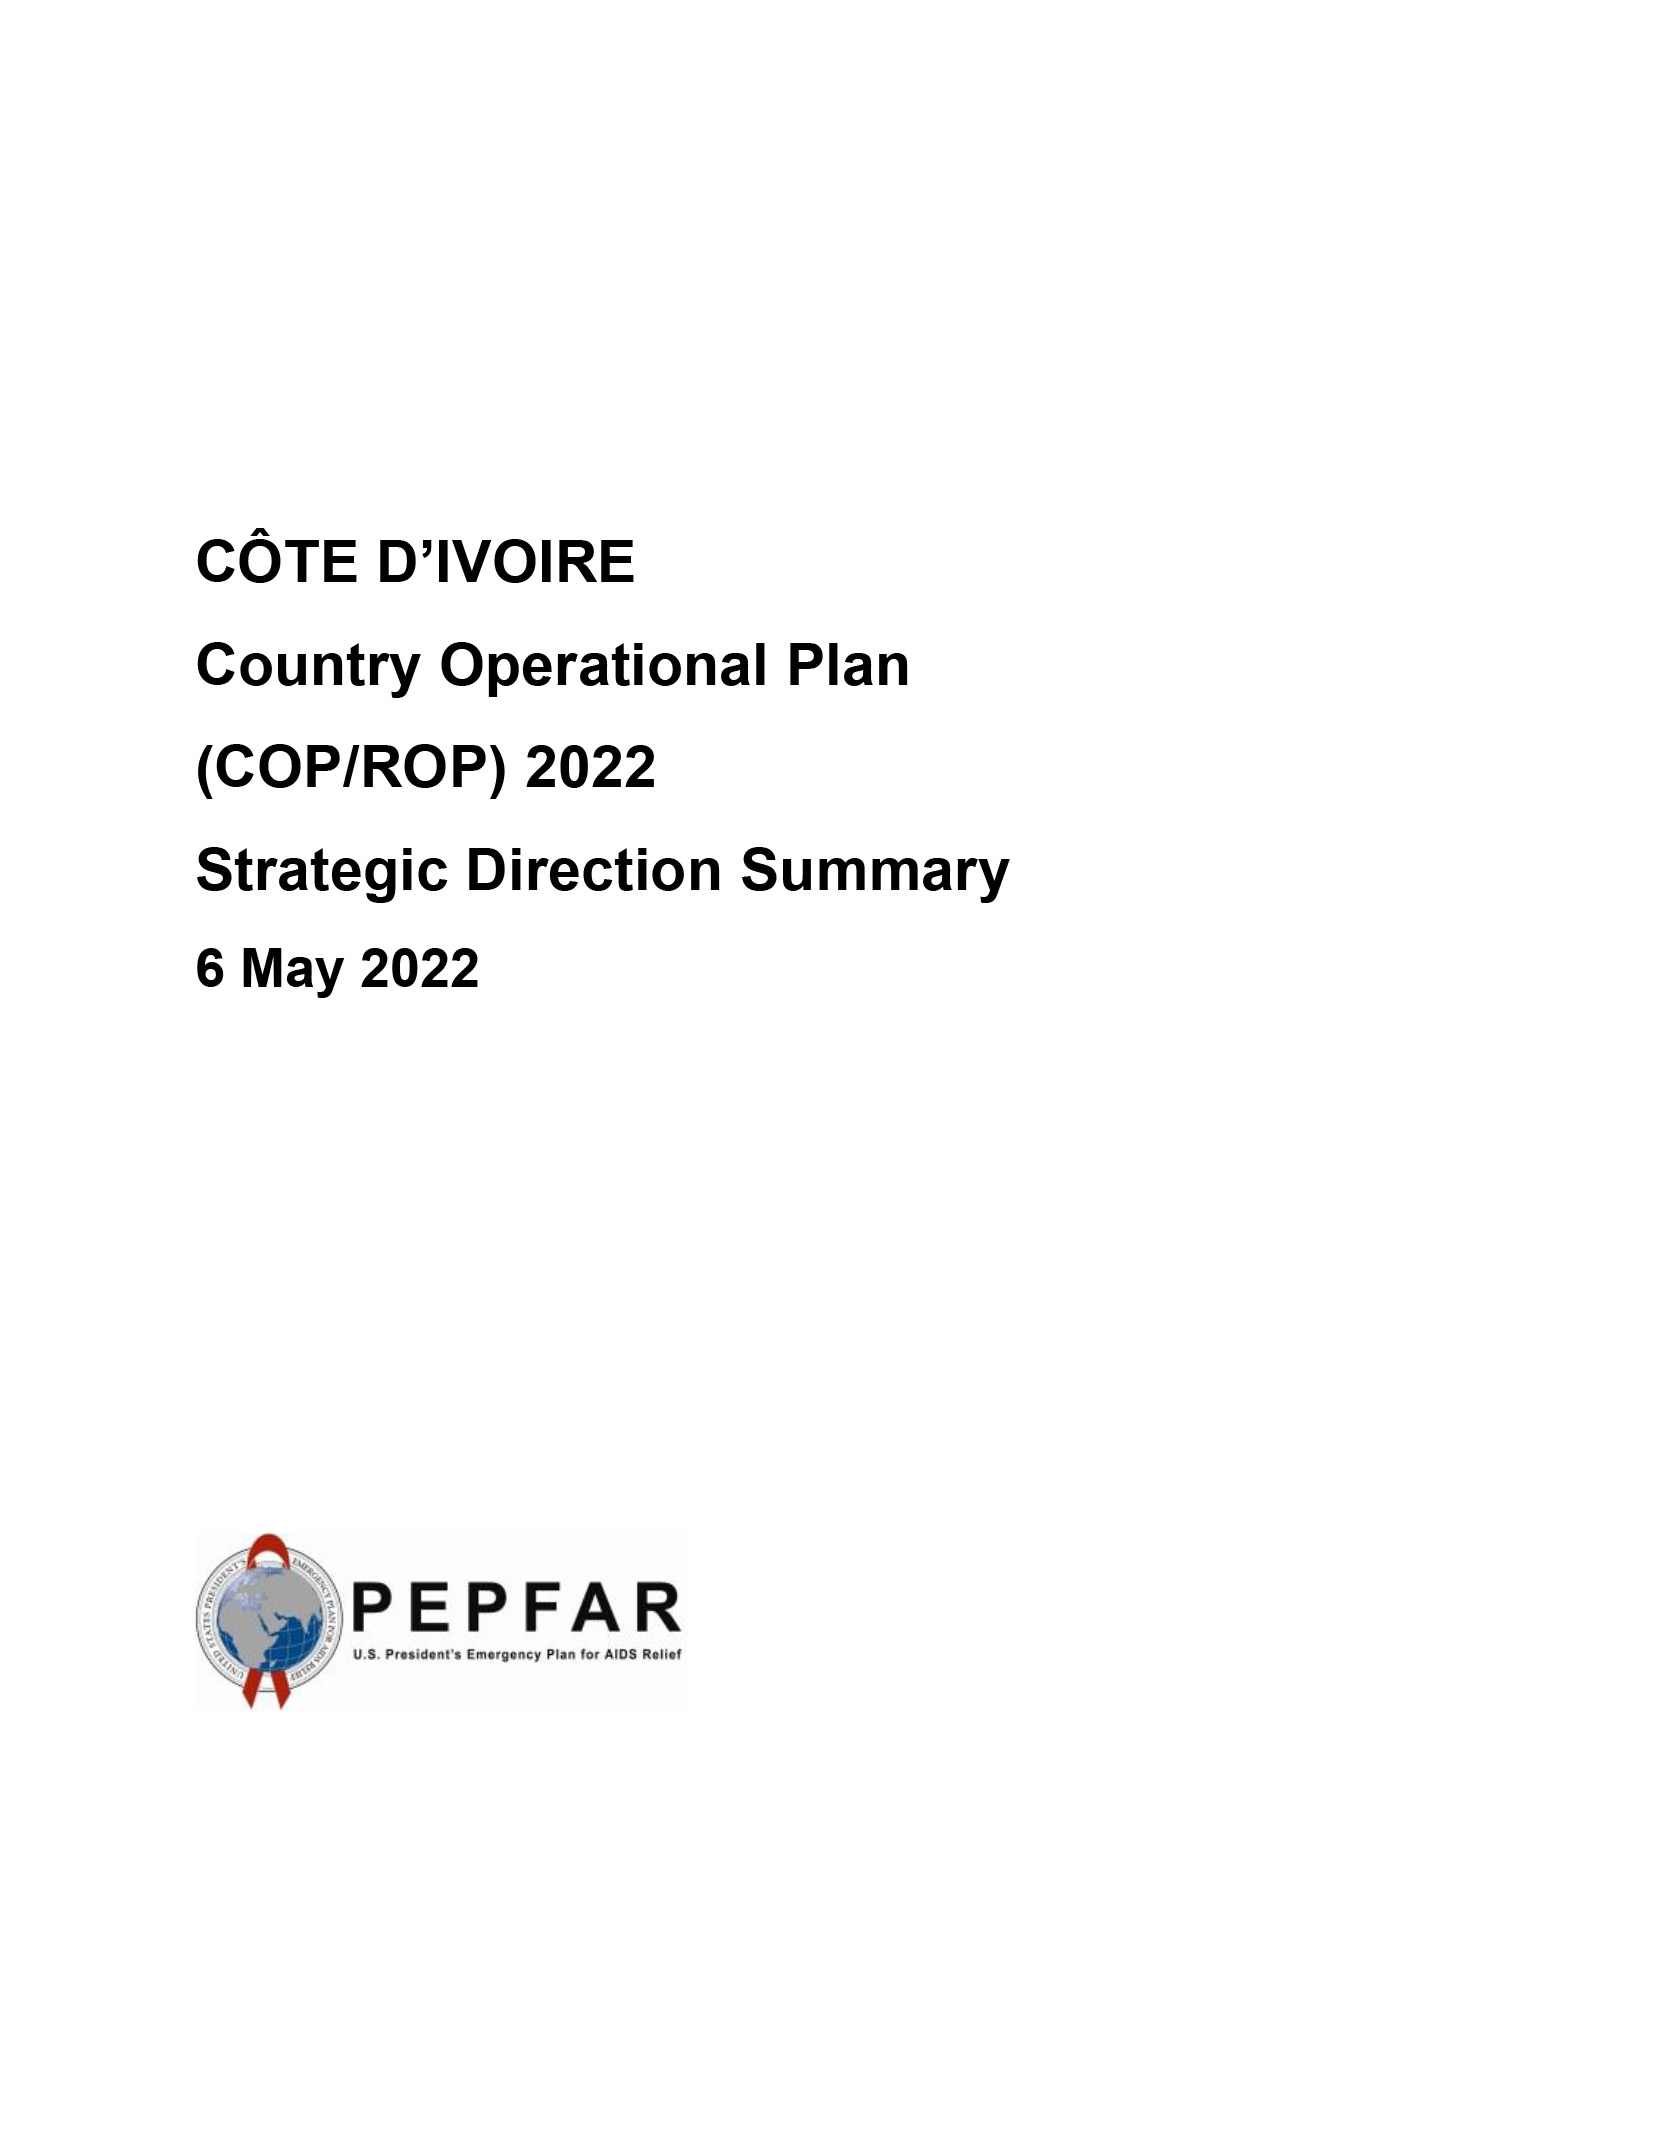 Resumen de la dirección estratégica del Plan Operativo Nacional de Costa de Marfil (COP/ROP) 2022 Portada